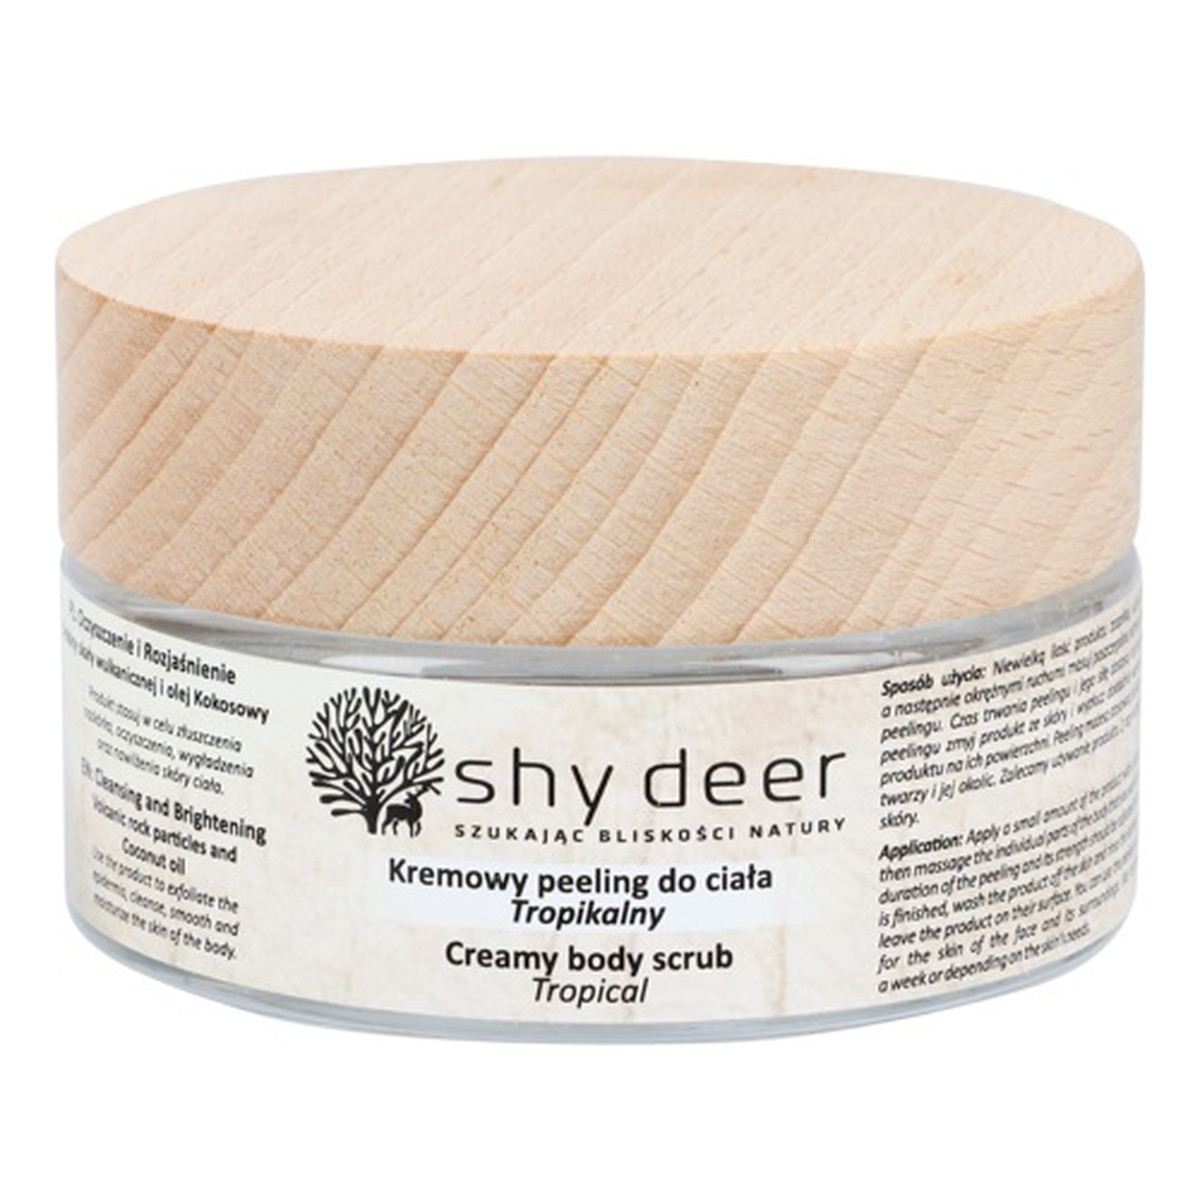 Shy Deer Creamy Body Scrub Kremowy peeling do ciała tropikalny 100ml